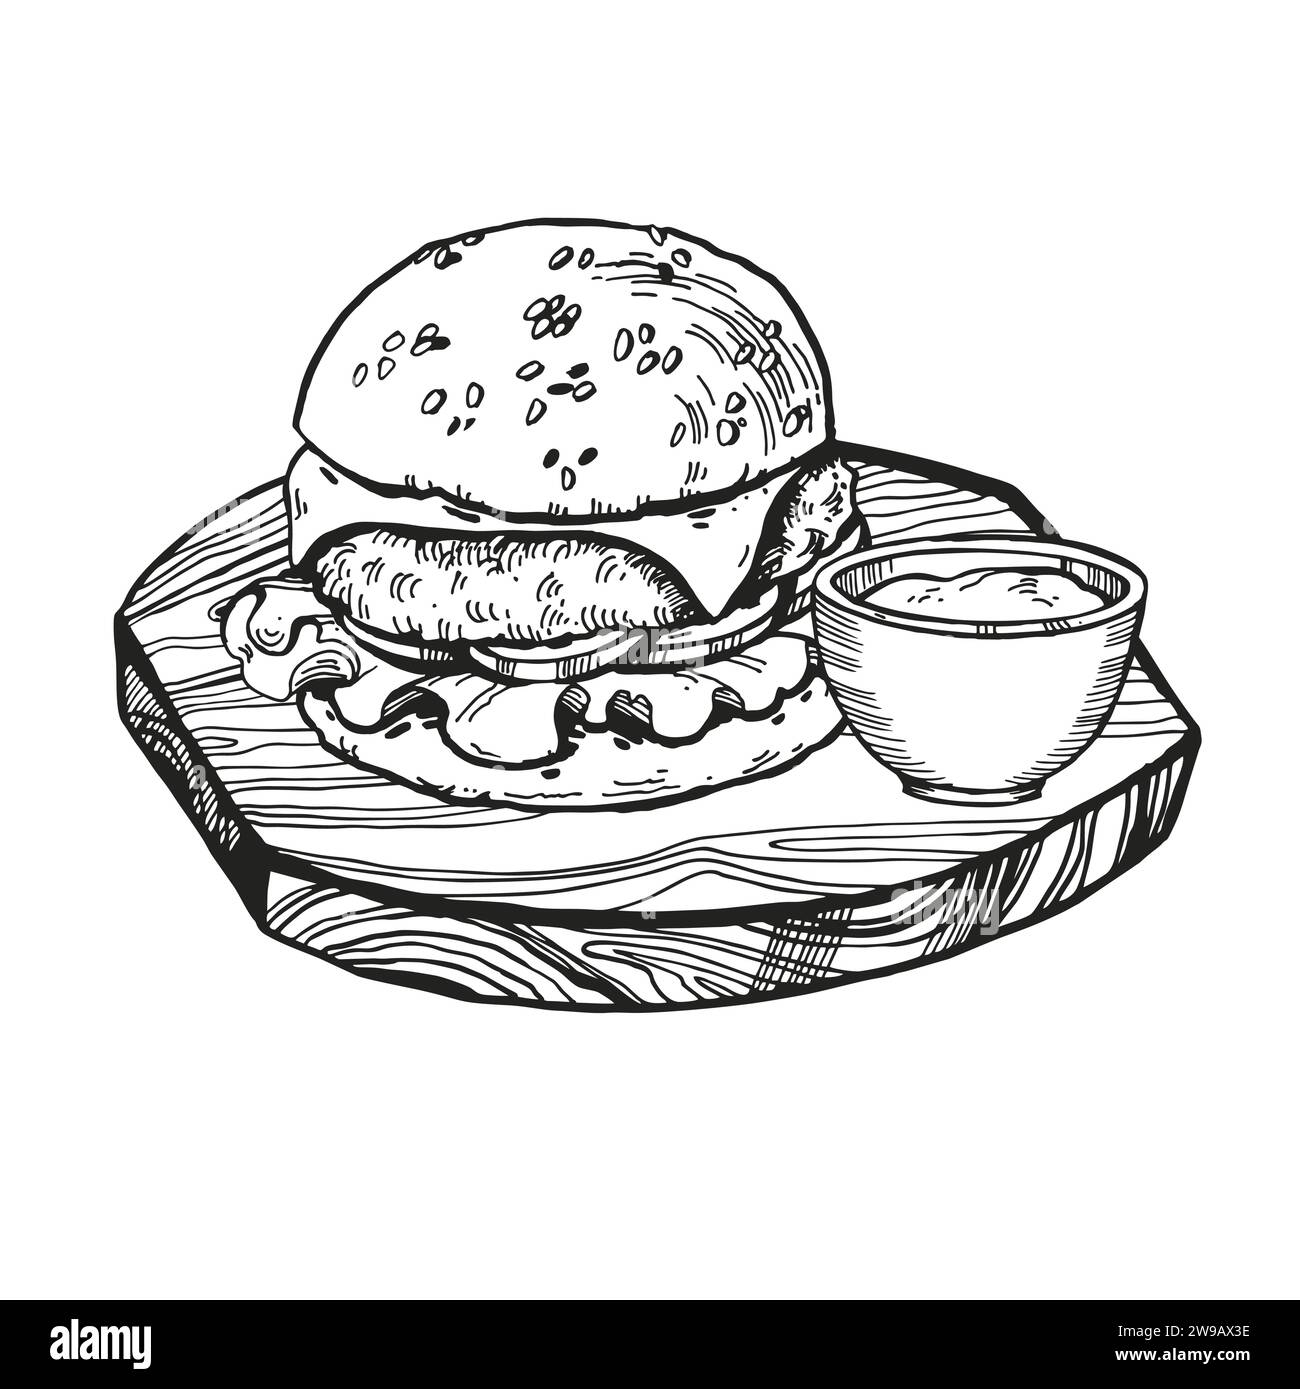 Vektor-Illustration von Burger mit Fleisch, Zwiebeln, Tomaten, Käse und Sauce auf hölzernem Schneidebrett, handgezeichnete Skizze von Fast Food, isoliert auf weißem Rücken Stock Vektor